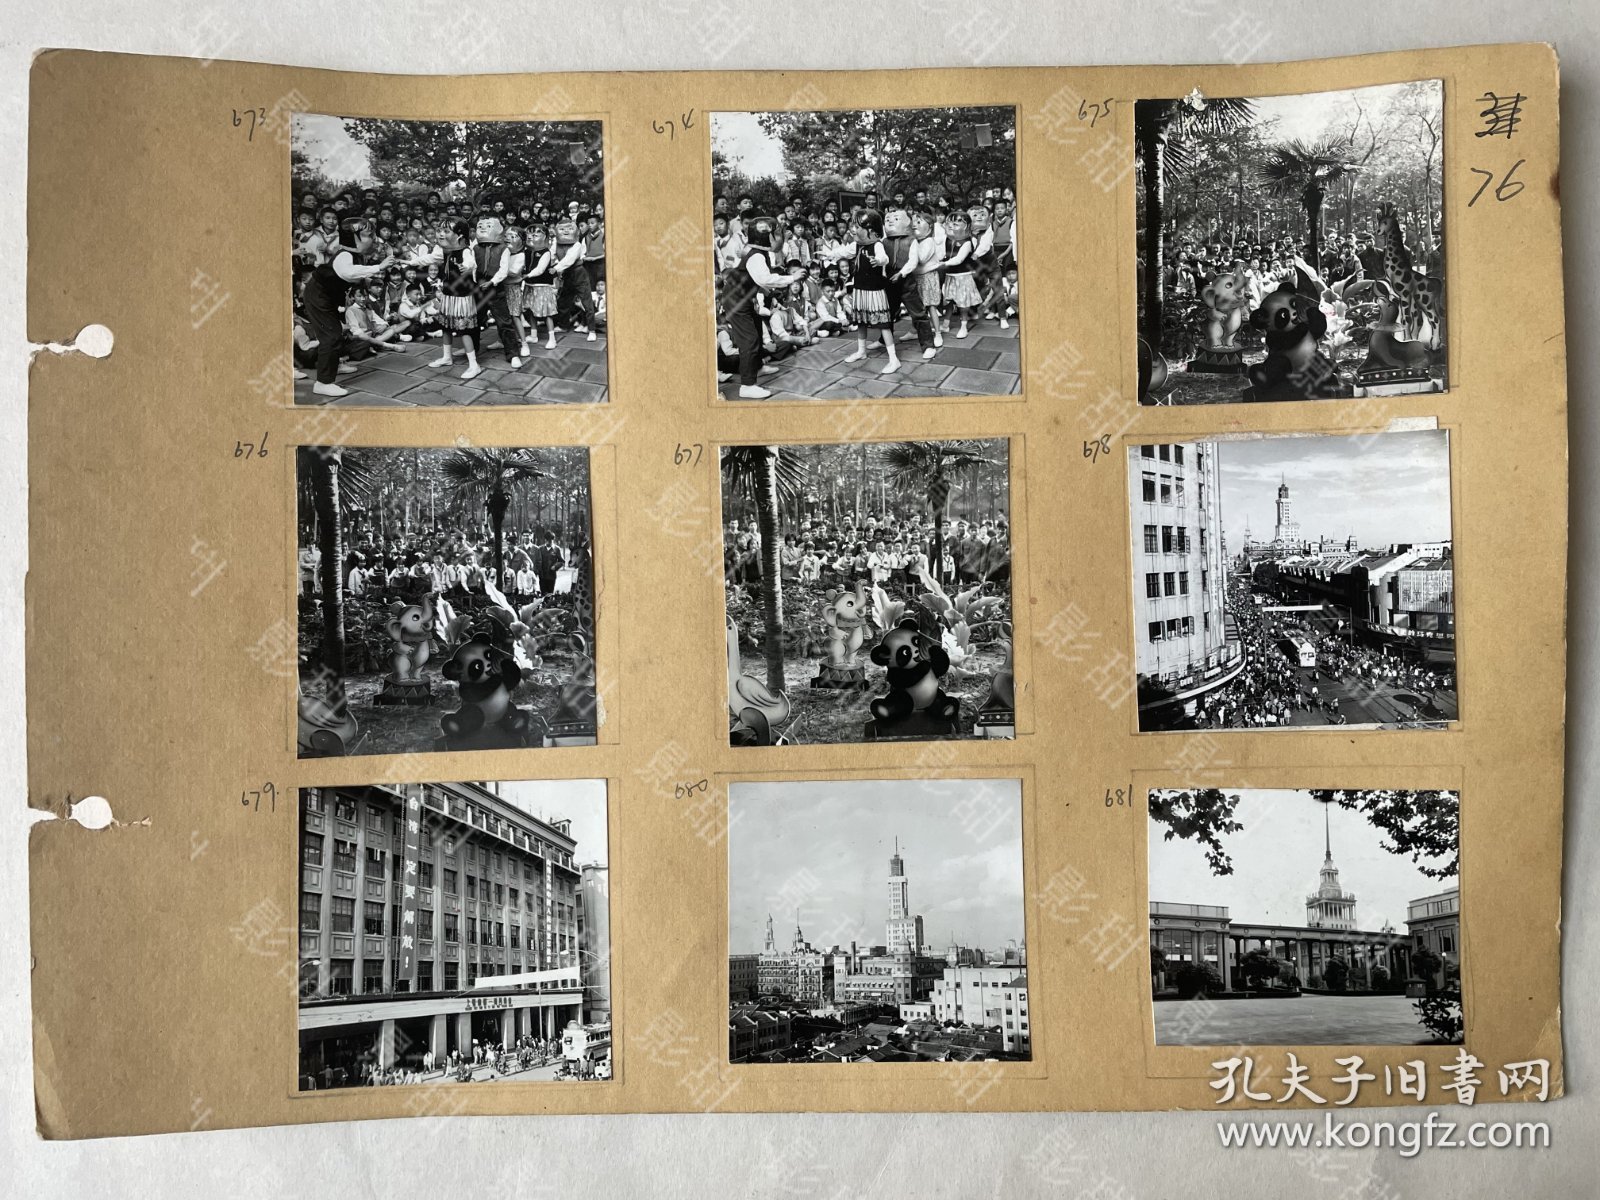 9张合售，应该是专业拍摄的，六七十年代的上海老照片，上海，儿童红领巾，戴面具，运动，上海市第一百货商店条幅“多快好省地建设社会主义！”“台湾一定要解放！”，“毛主席万岁”。照片粘在一个硬纸上。